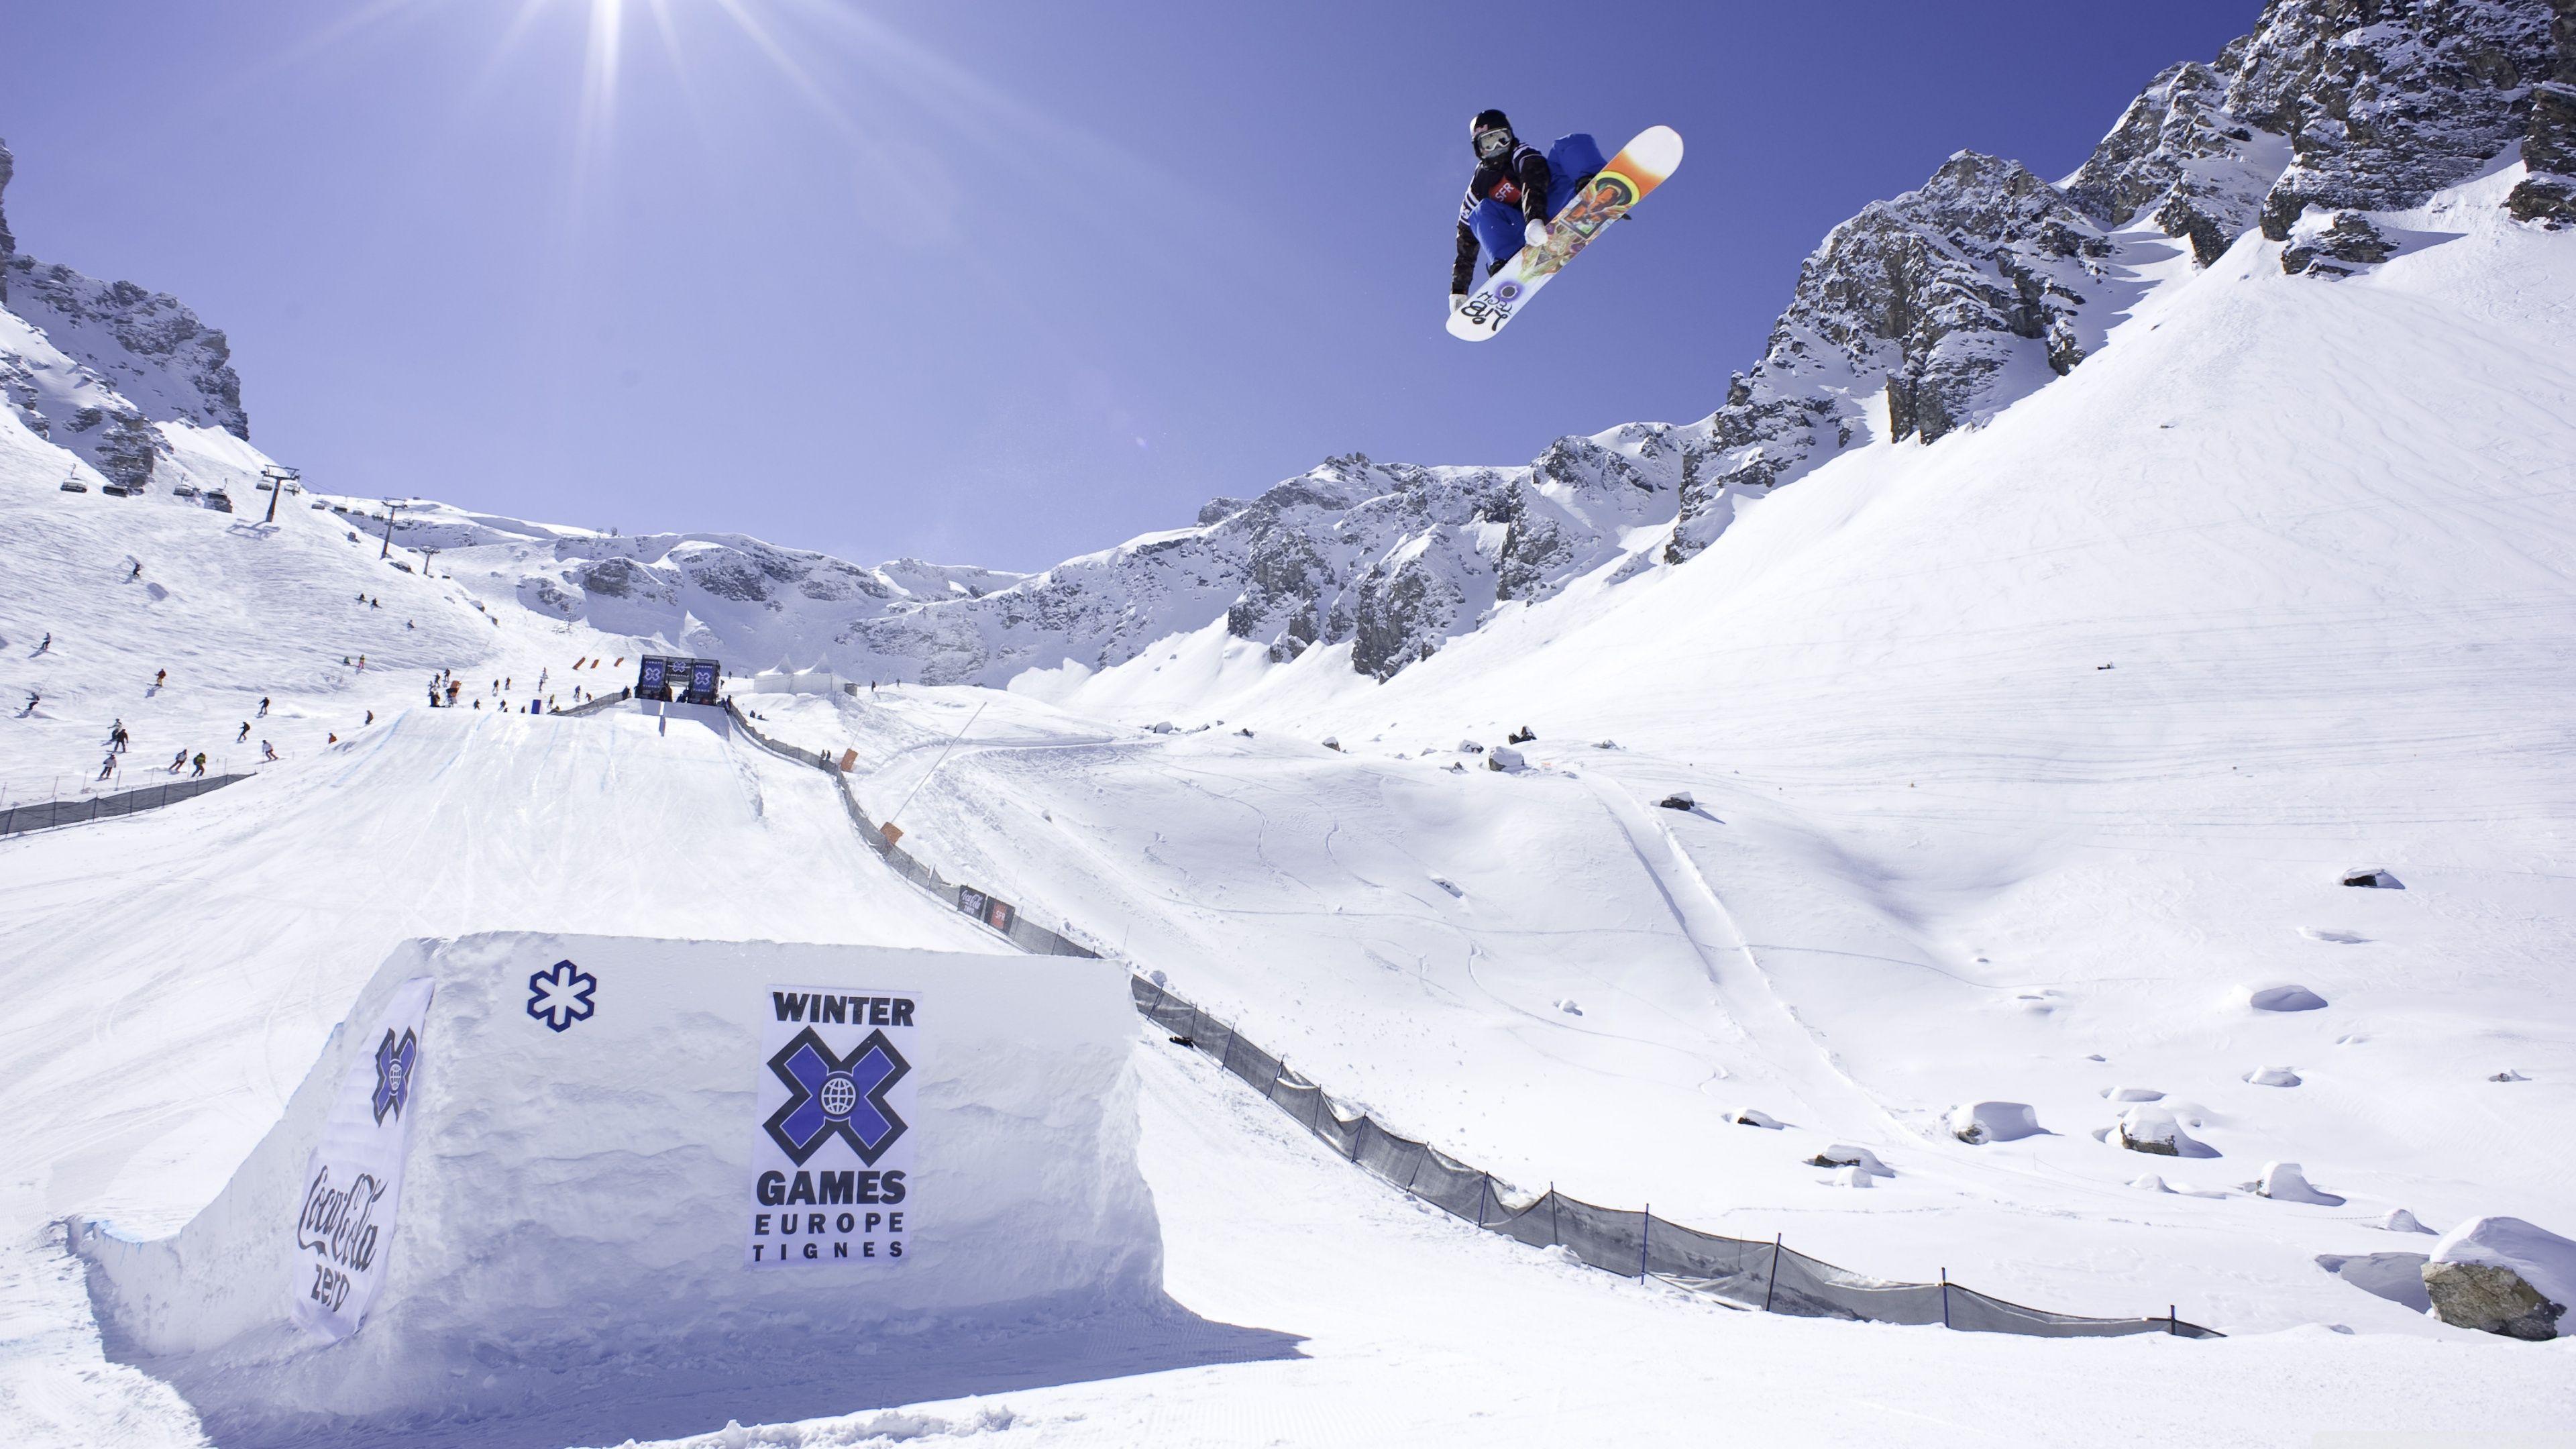 X Games Snowboarding HD desktop wallpaper, Widescreen, High